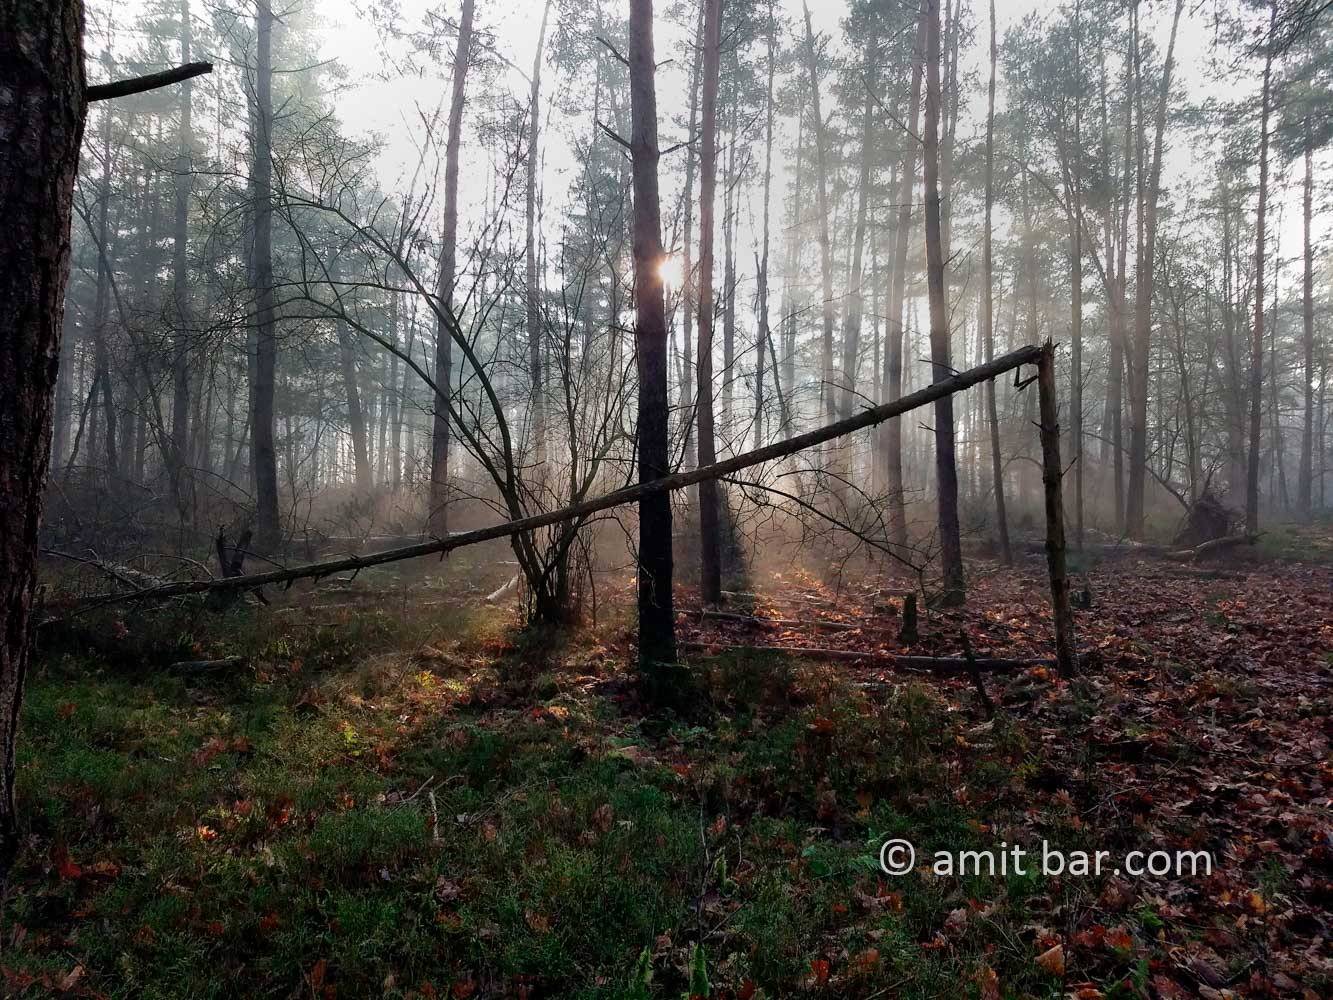 Misty forest III: Misty forest beside Laag-Soeren, The Netherlands